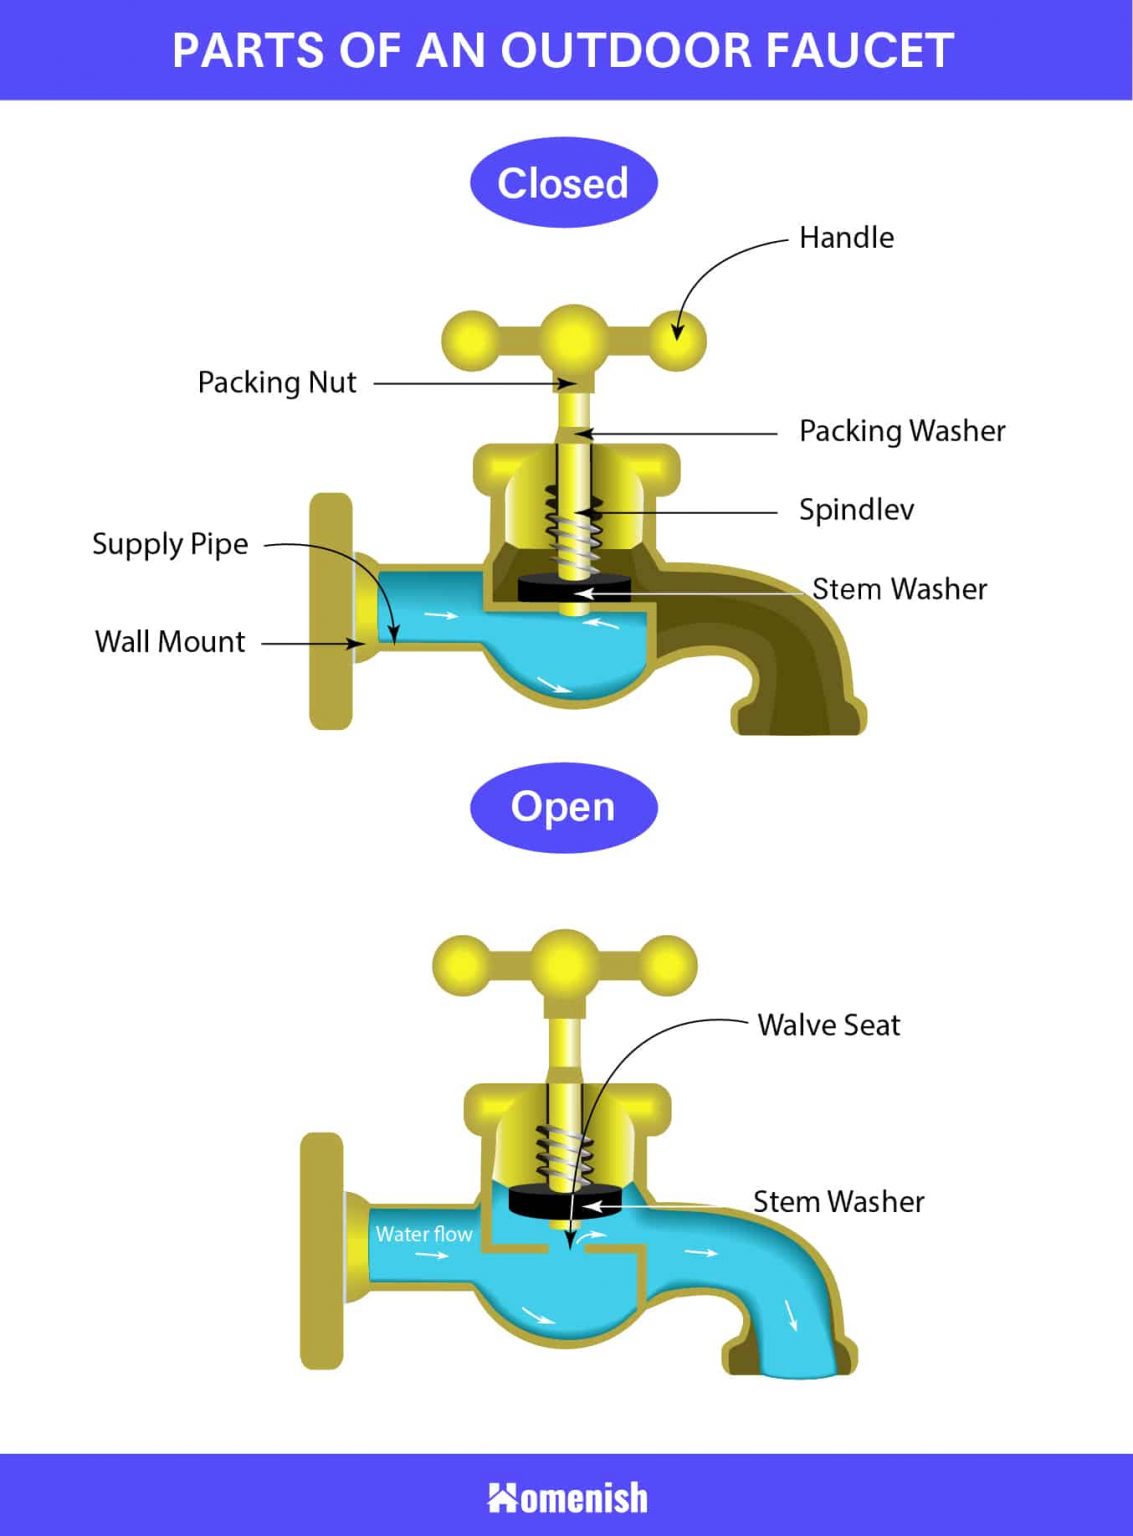 Faucet Parts Diagram - Heat exchanger spare parts